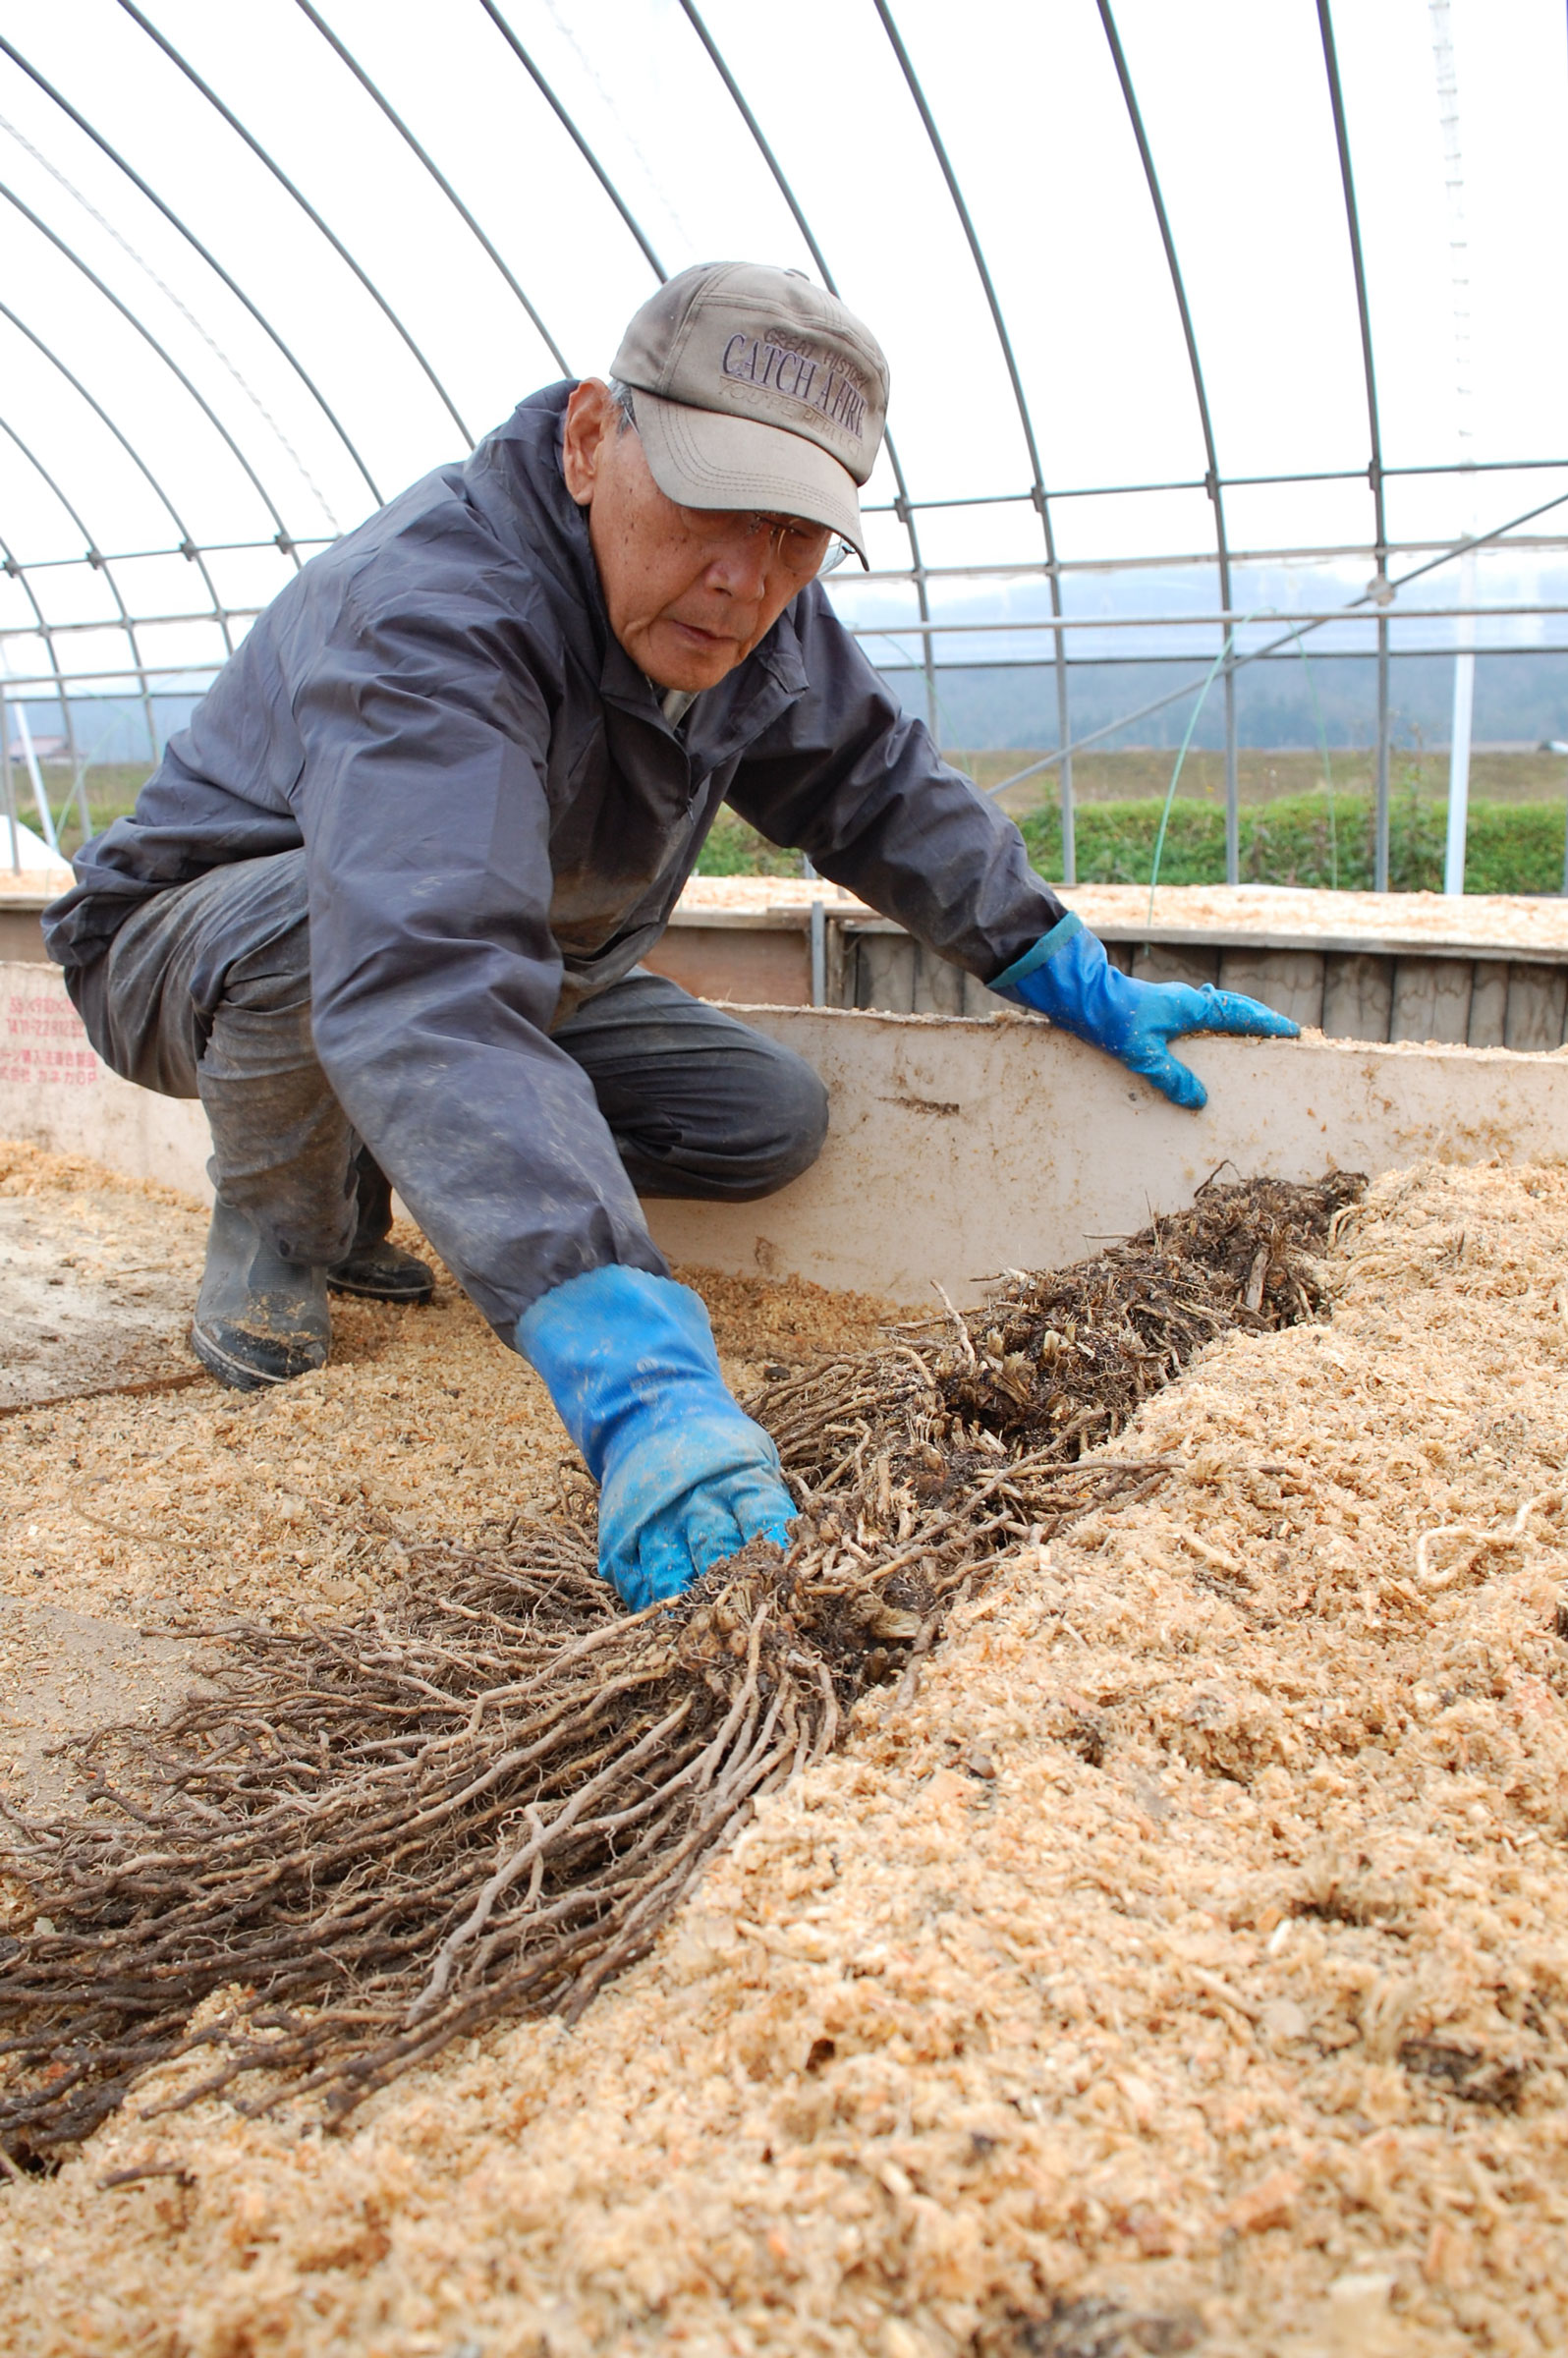 アスパラガス伏せ込み栽培で収益アップを ｊａ広島北部アスパラガスグループ ｊａグループ広島